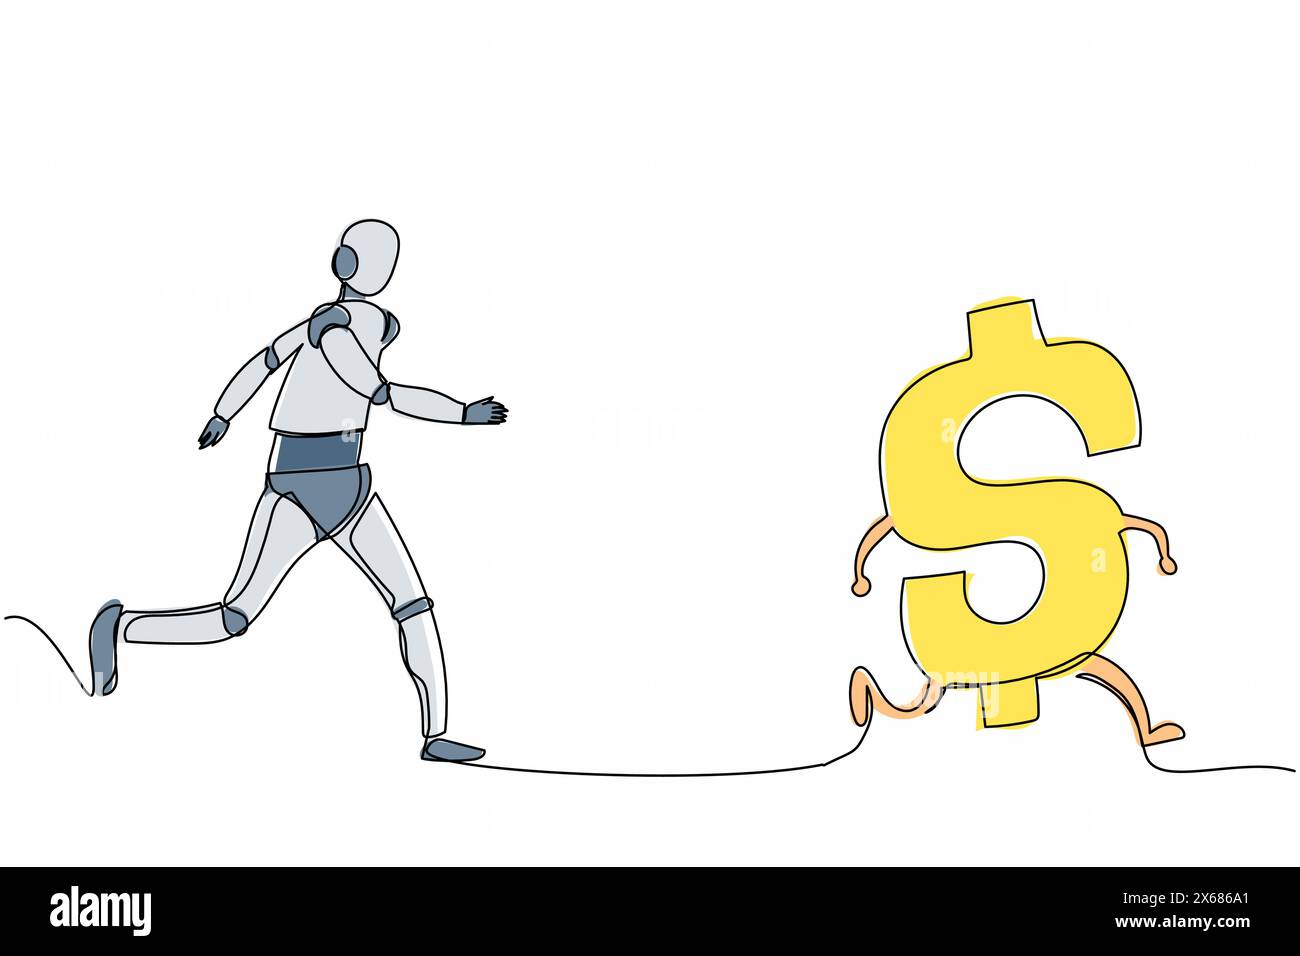 Robot dessinant une seule ligne continue chassant le symbole dollar. Investissement pour le développement technologique. Intelligence artificielle robotique. Technologie électronique dans Illustration de Vecteur